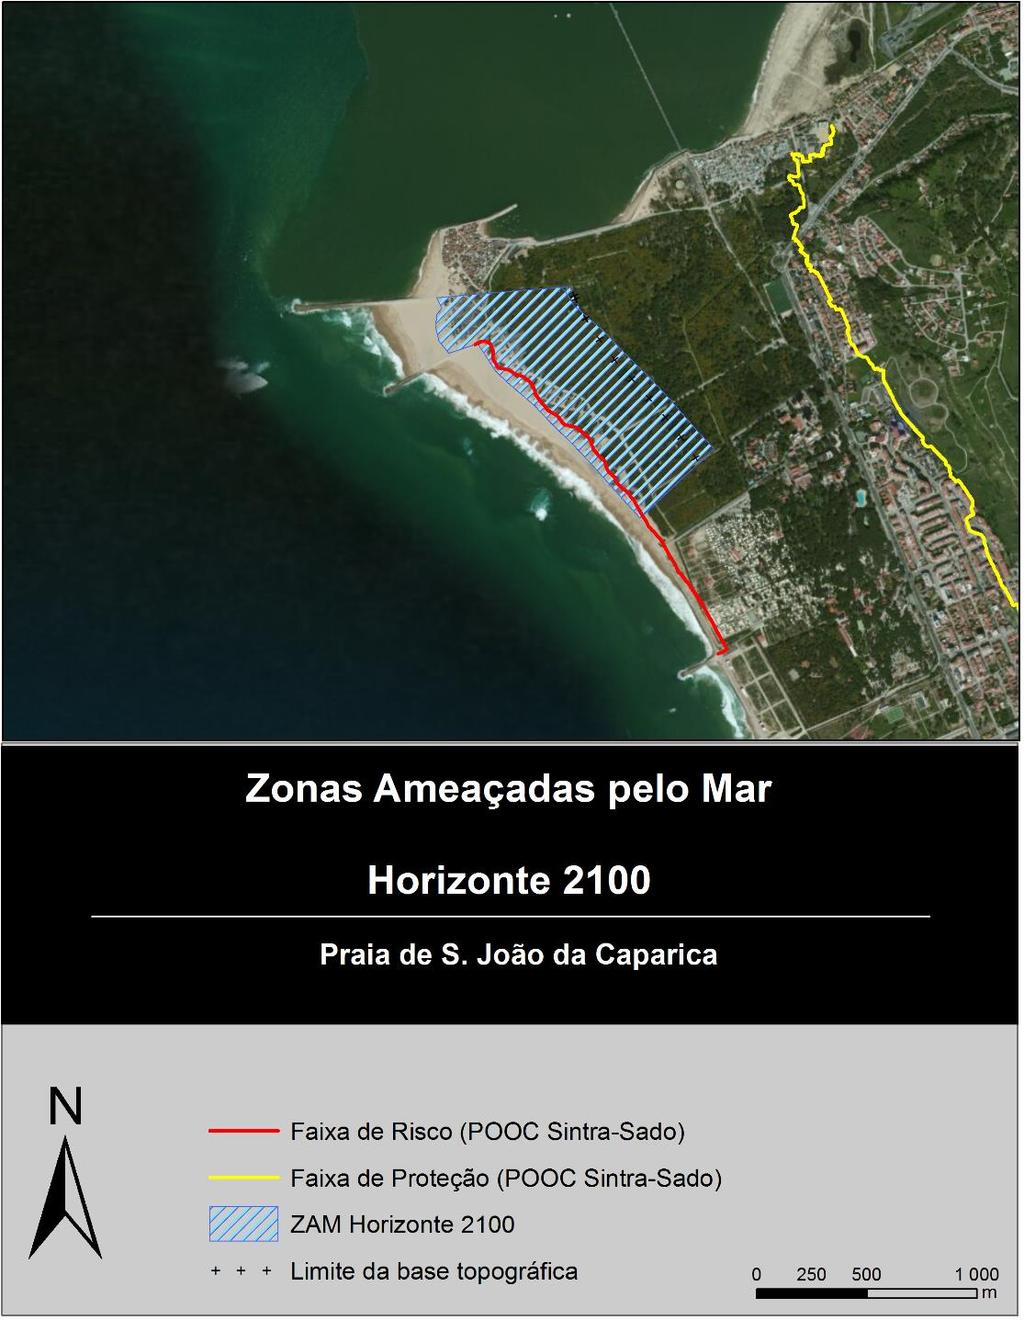 Figura 6. Cartografia das ZAM considerando o horizonte temporal 2100 (recuo e galgamento/inundação) e das faixas de salvaguarda (risco e proteção) no troço da praia de S.